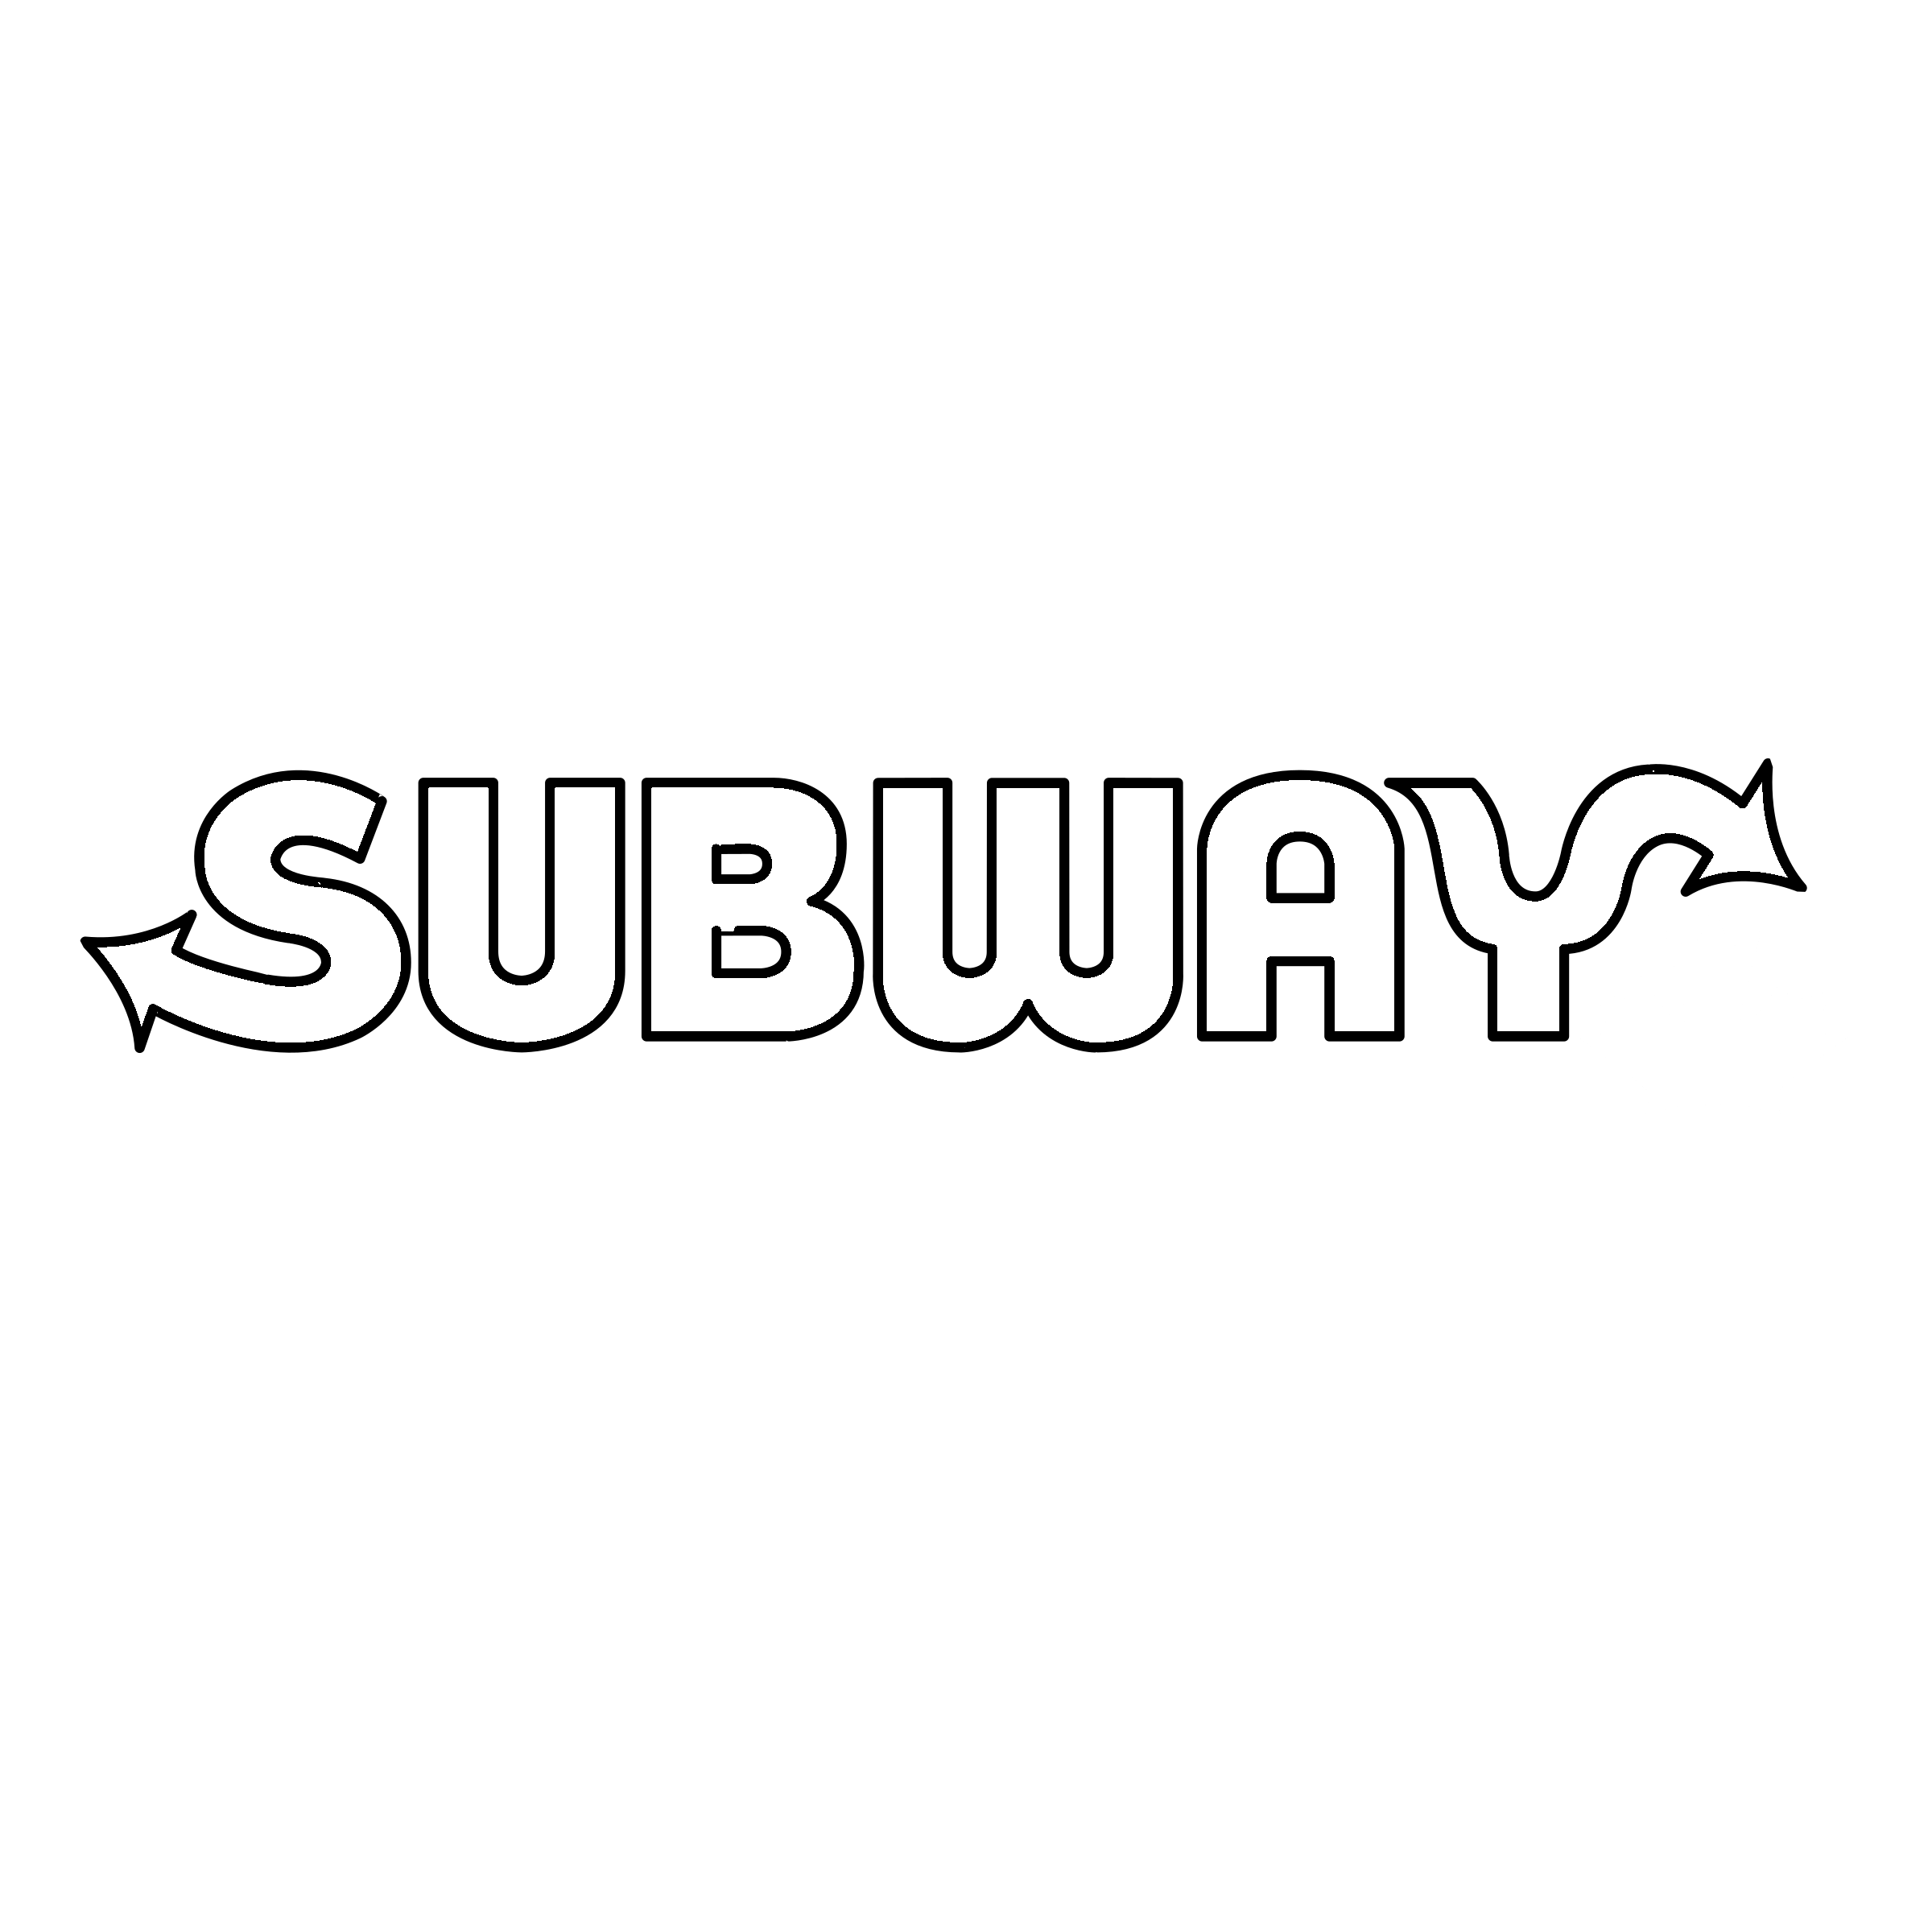 Subway.png